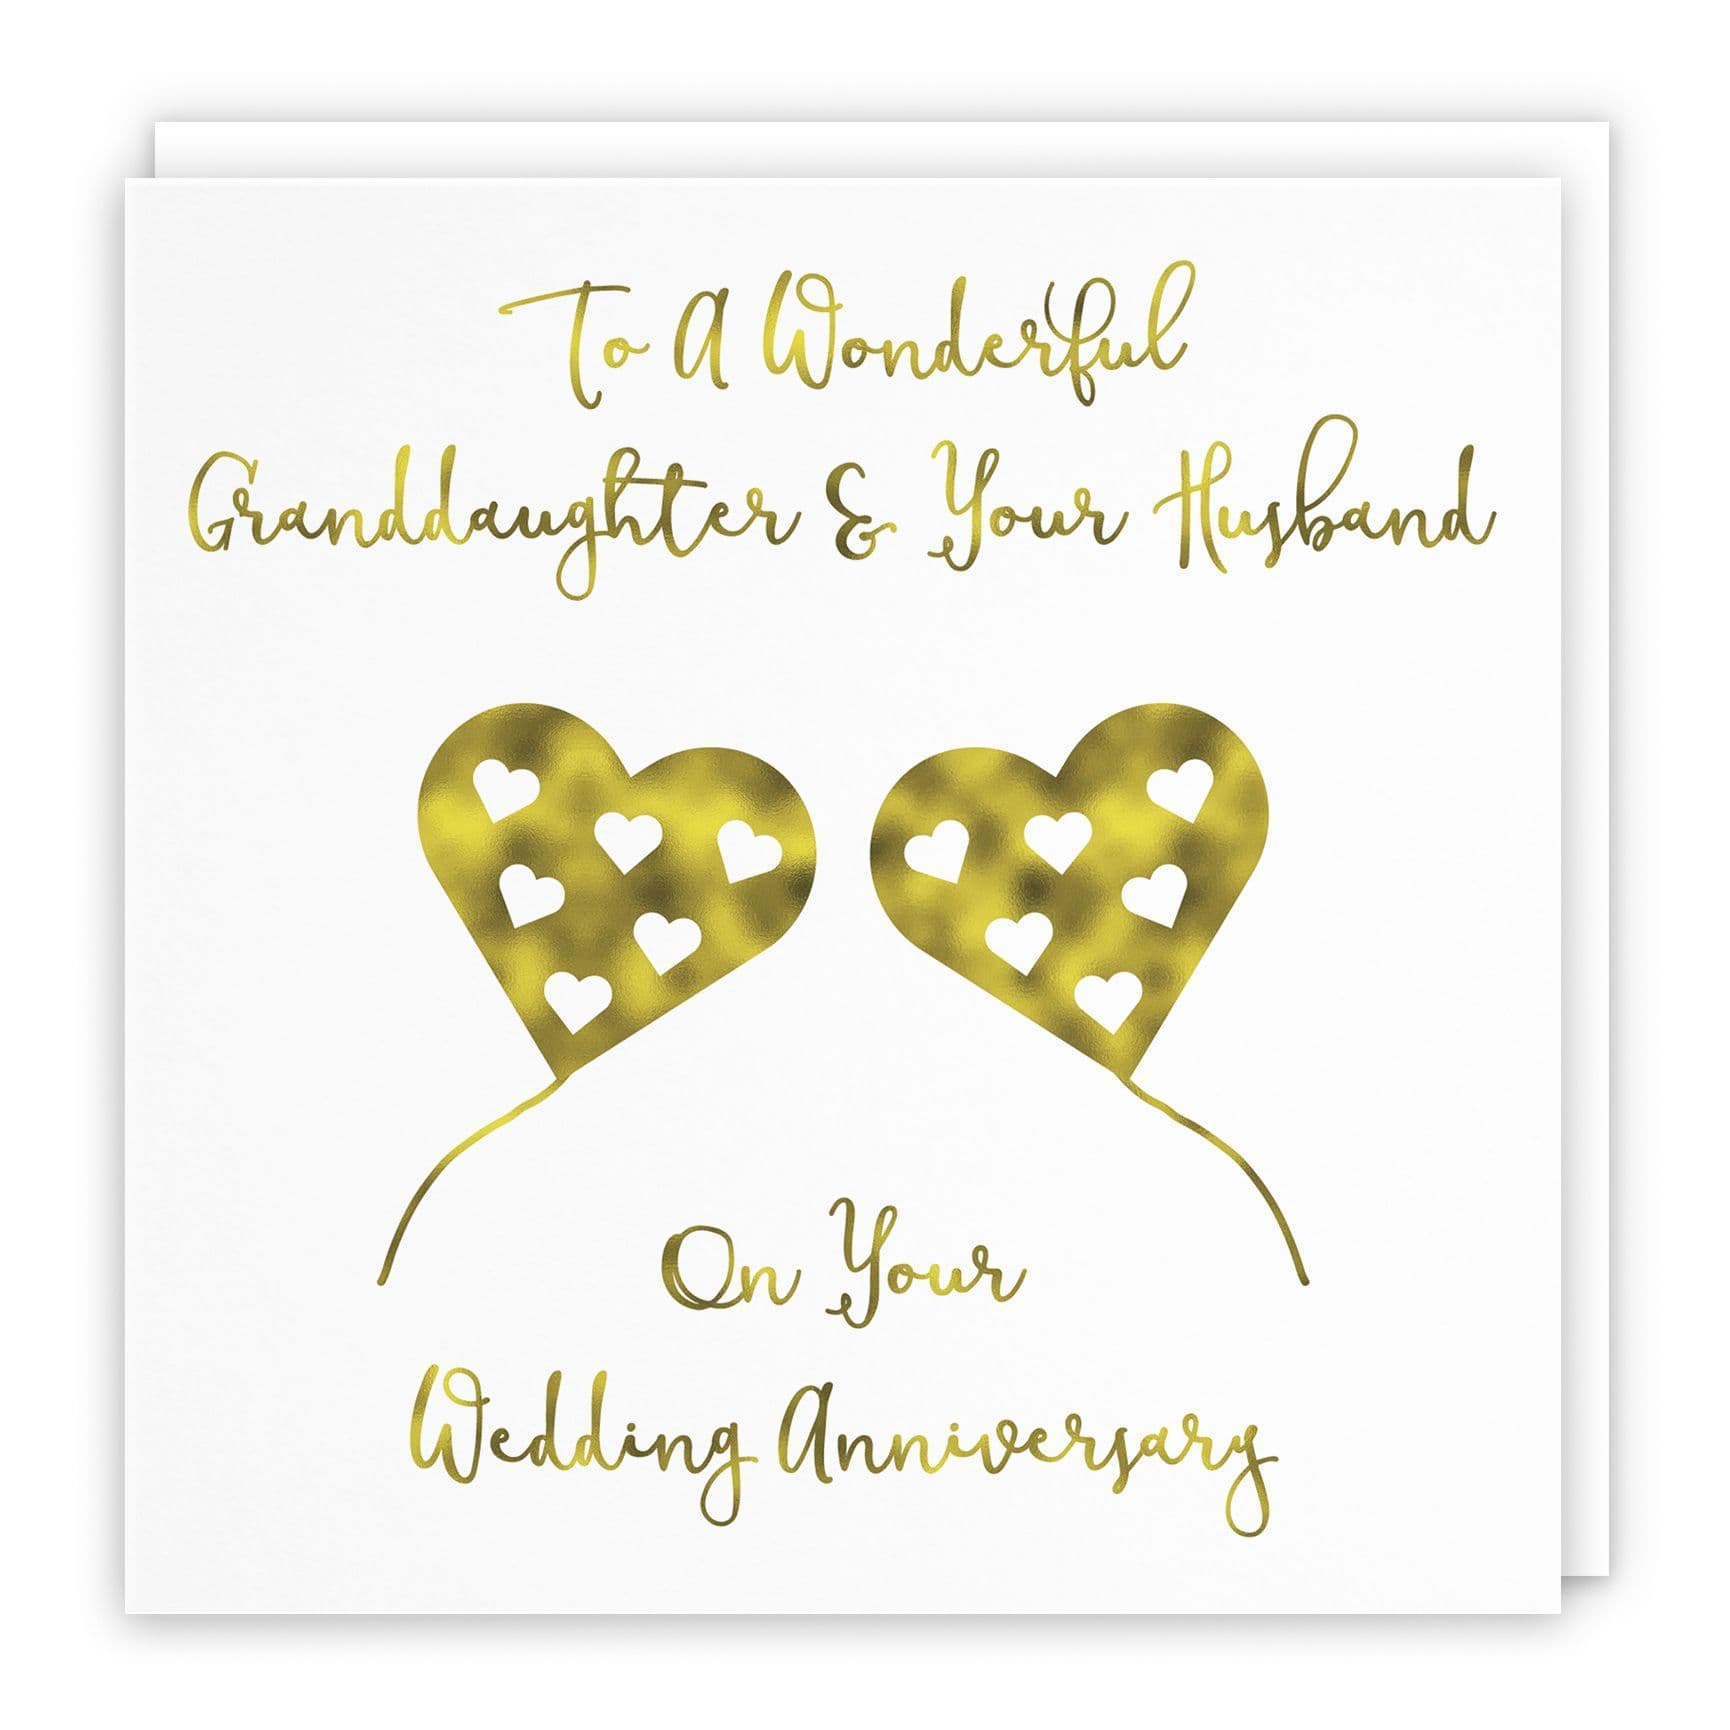 Granddaughter And Husband Anniversary Card Milano